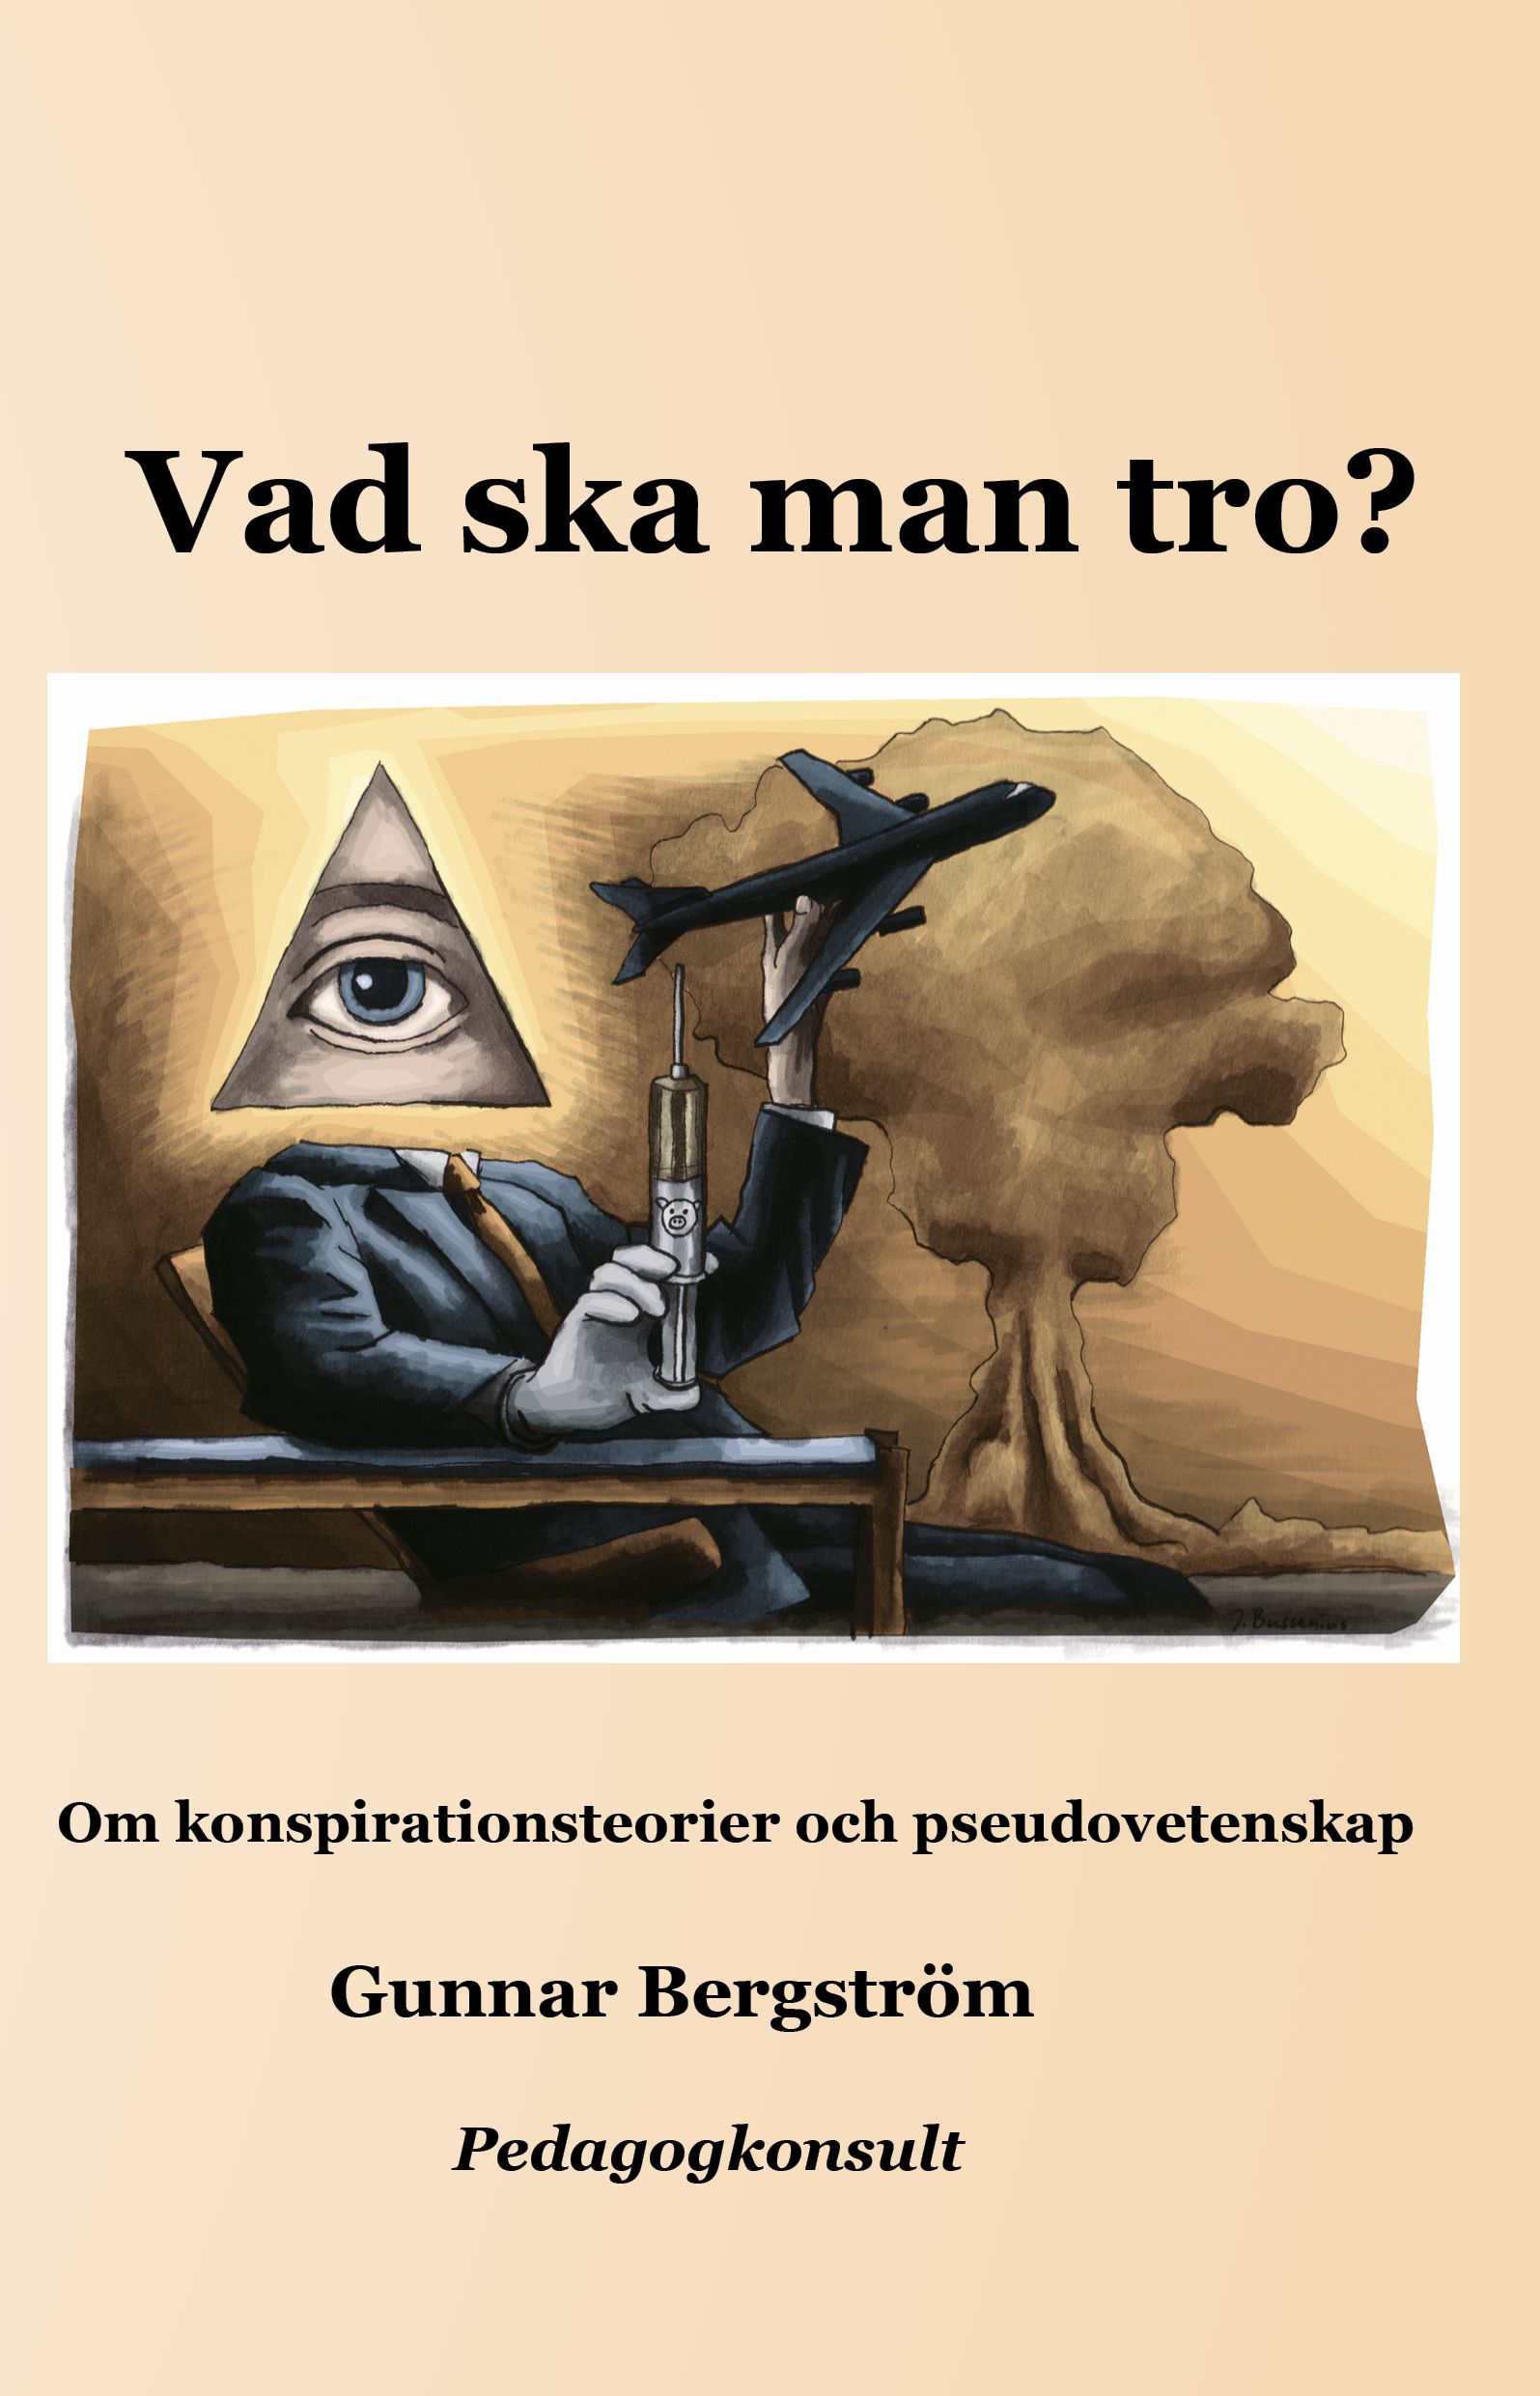 Vad ska man tro?, e-bok av Gunnar Bergström